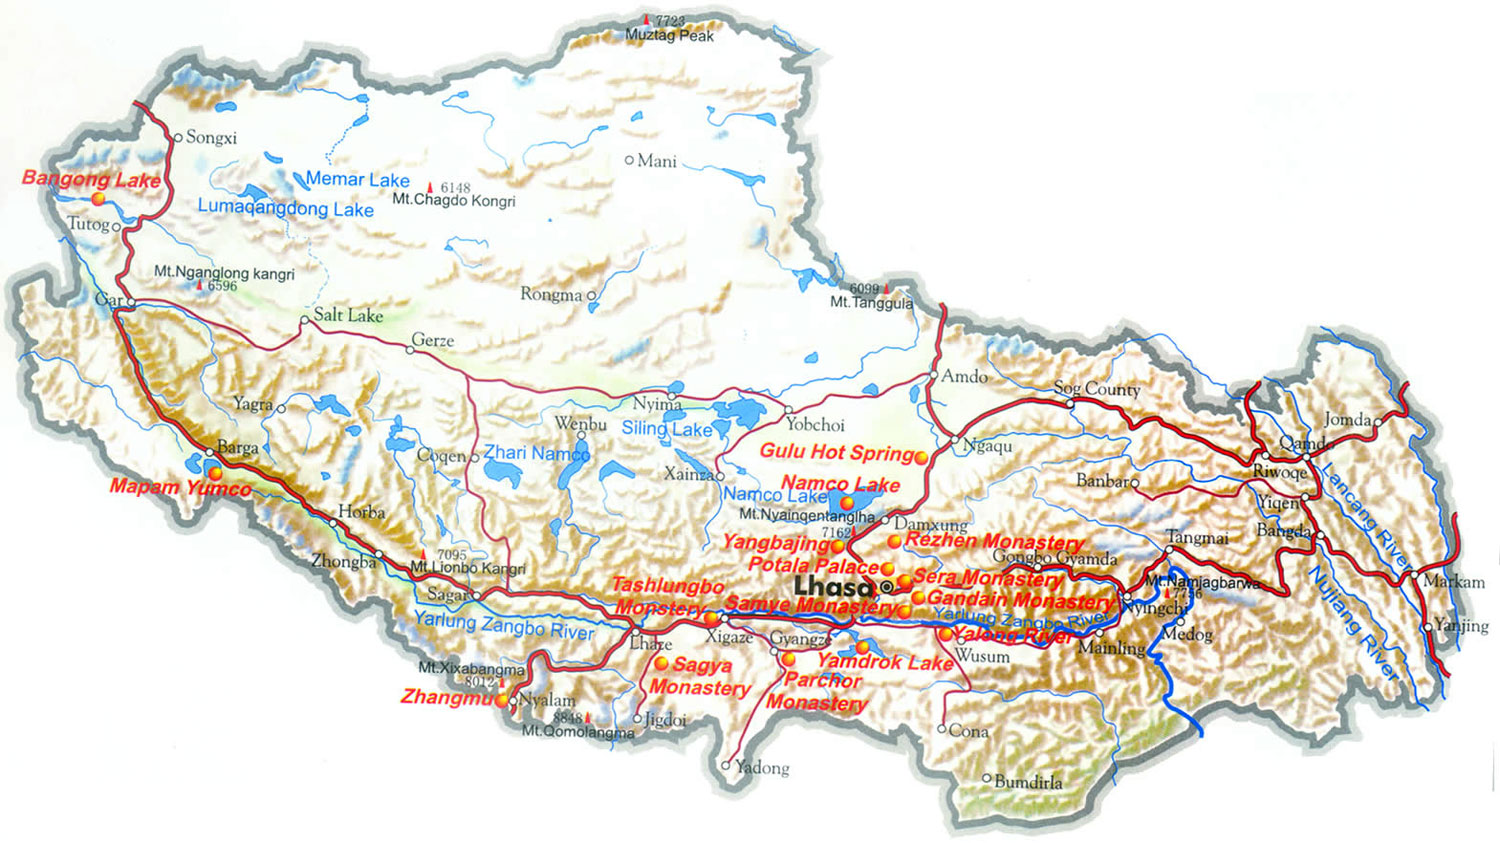 Tibet Highway Map